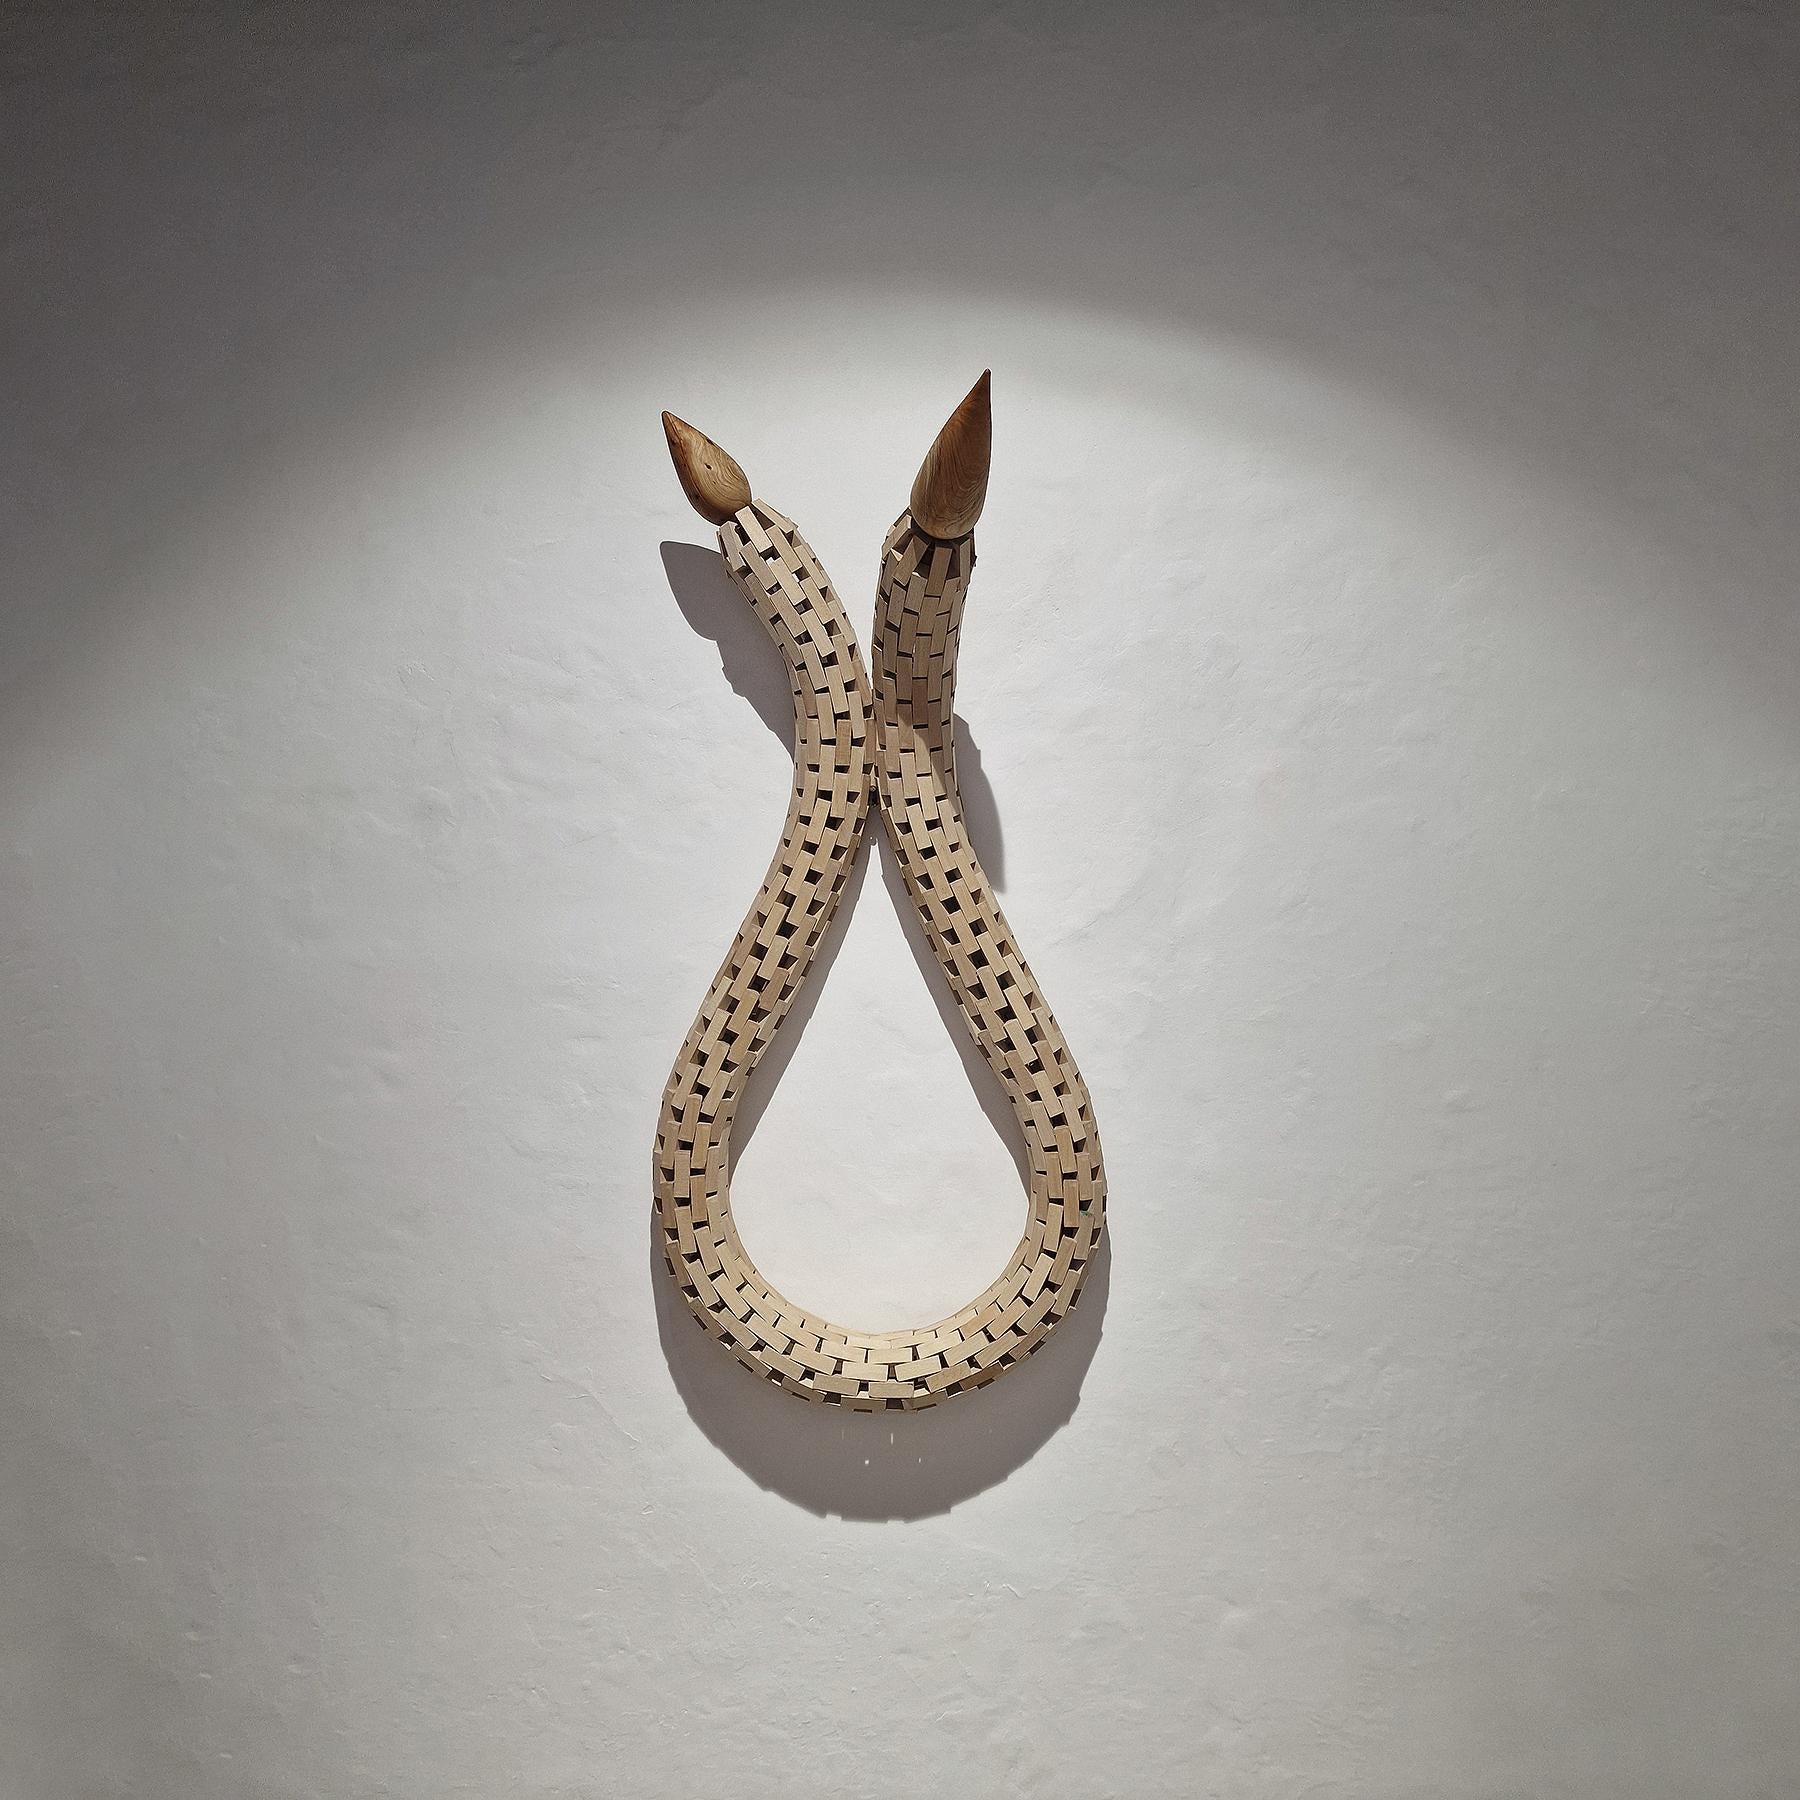 Carlos Nicanor Abstract Sculpture - Invertebrado